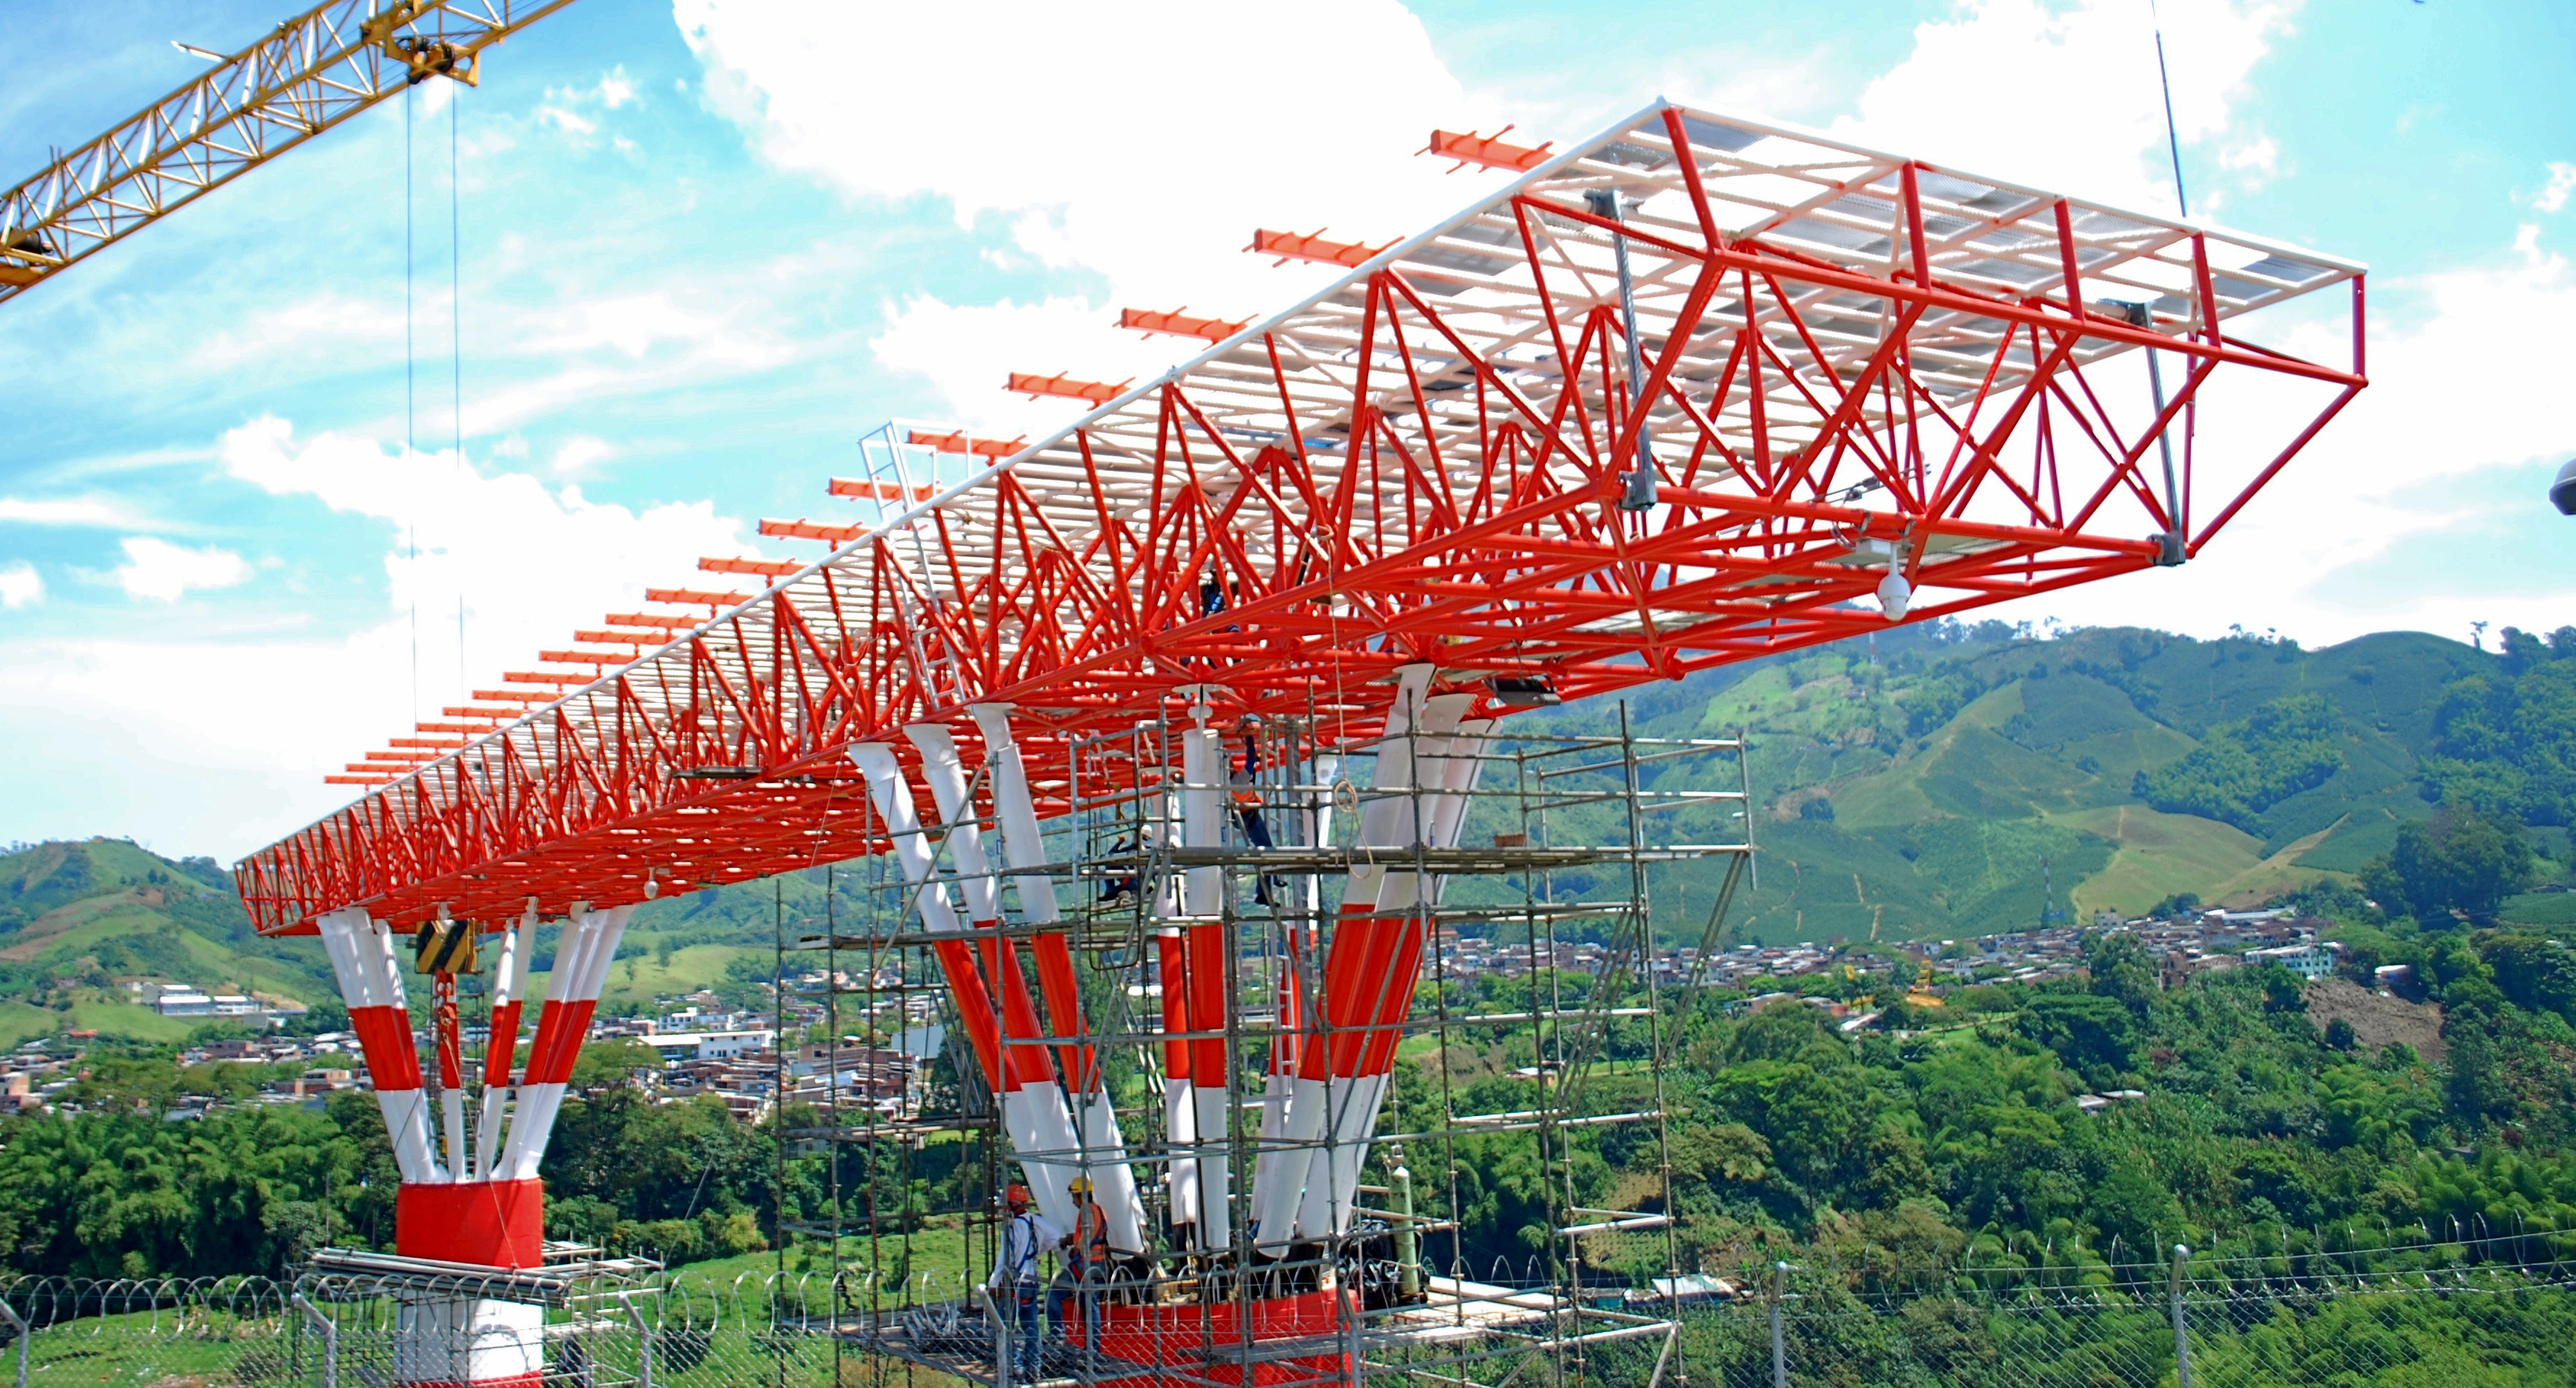 AeroMatecaña pone en servicio radio ayuda que permite aterrizaje de aeronaves en difíciles condiciones meteorológicas